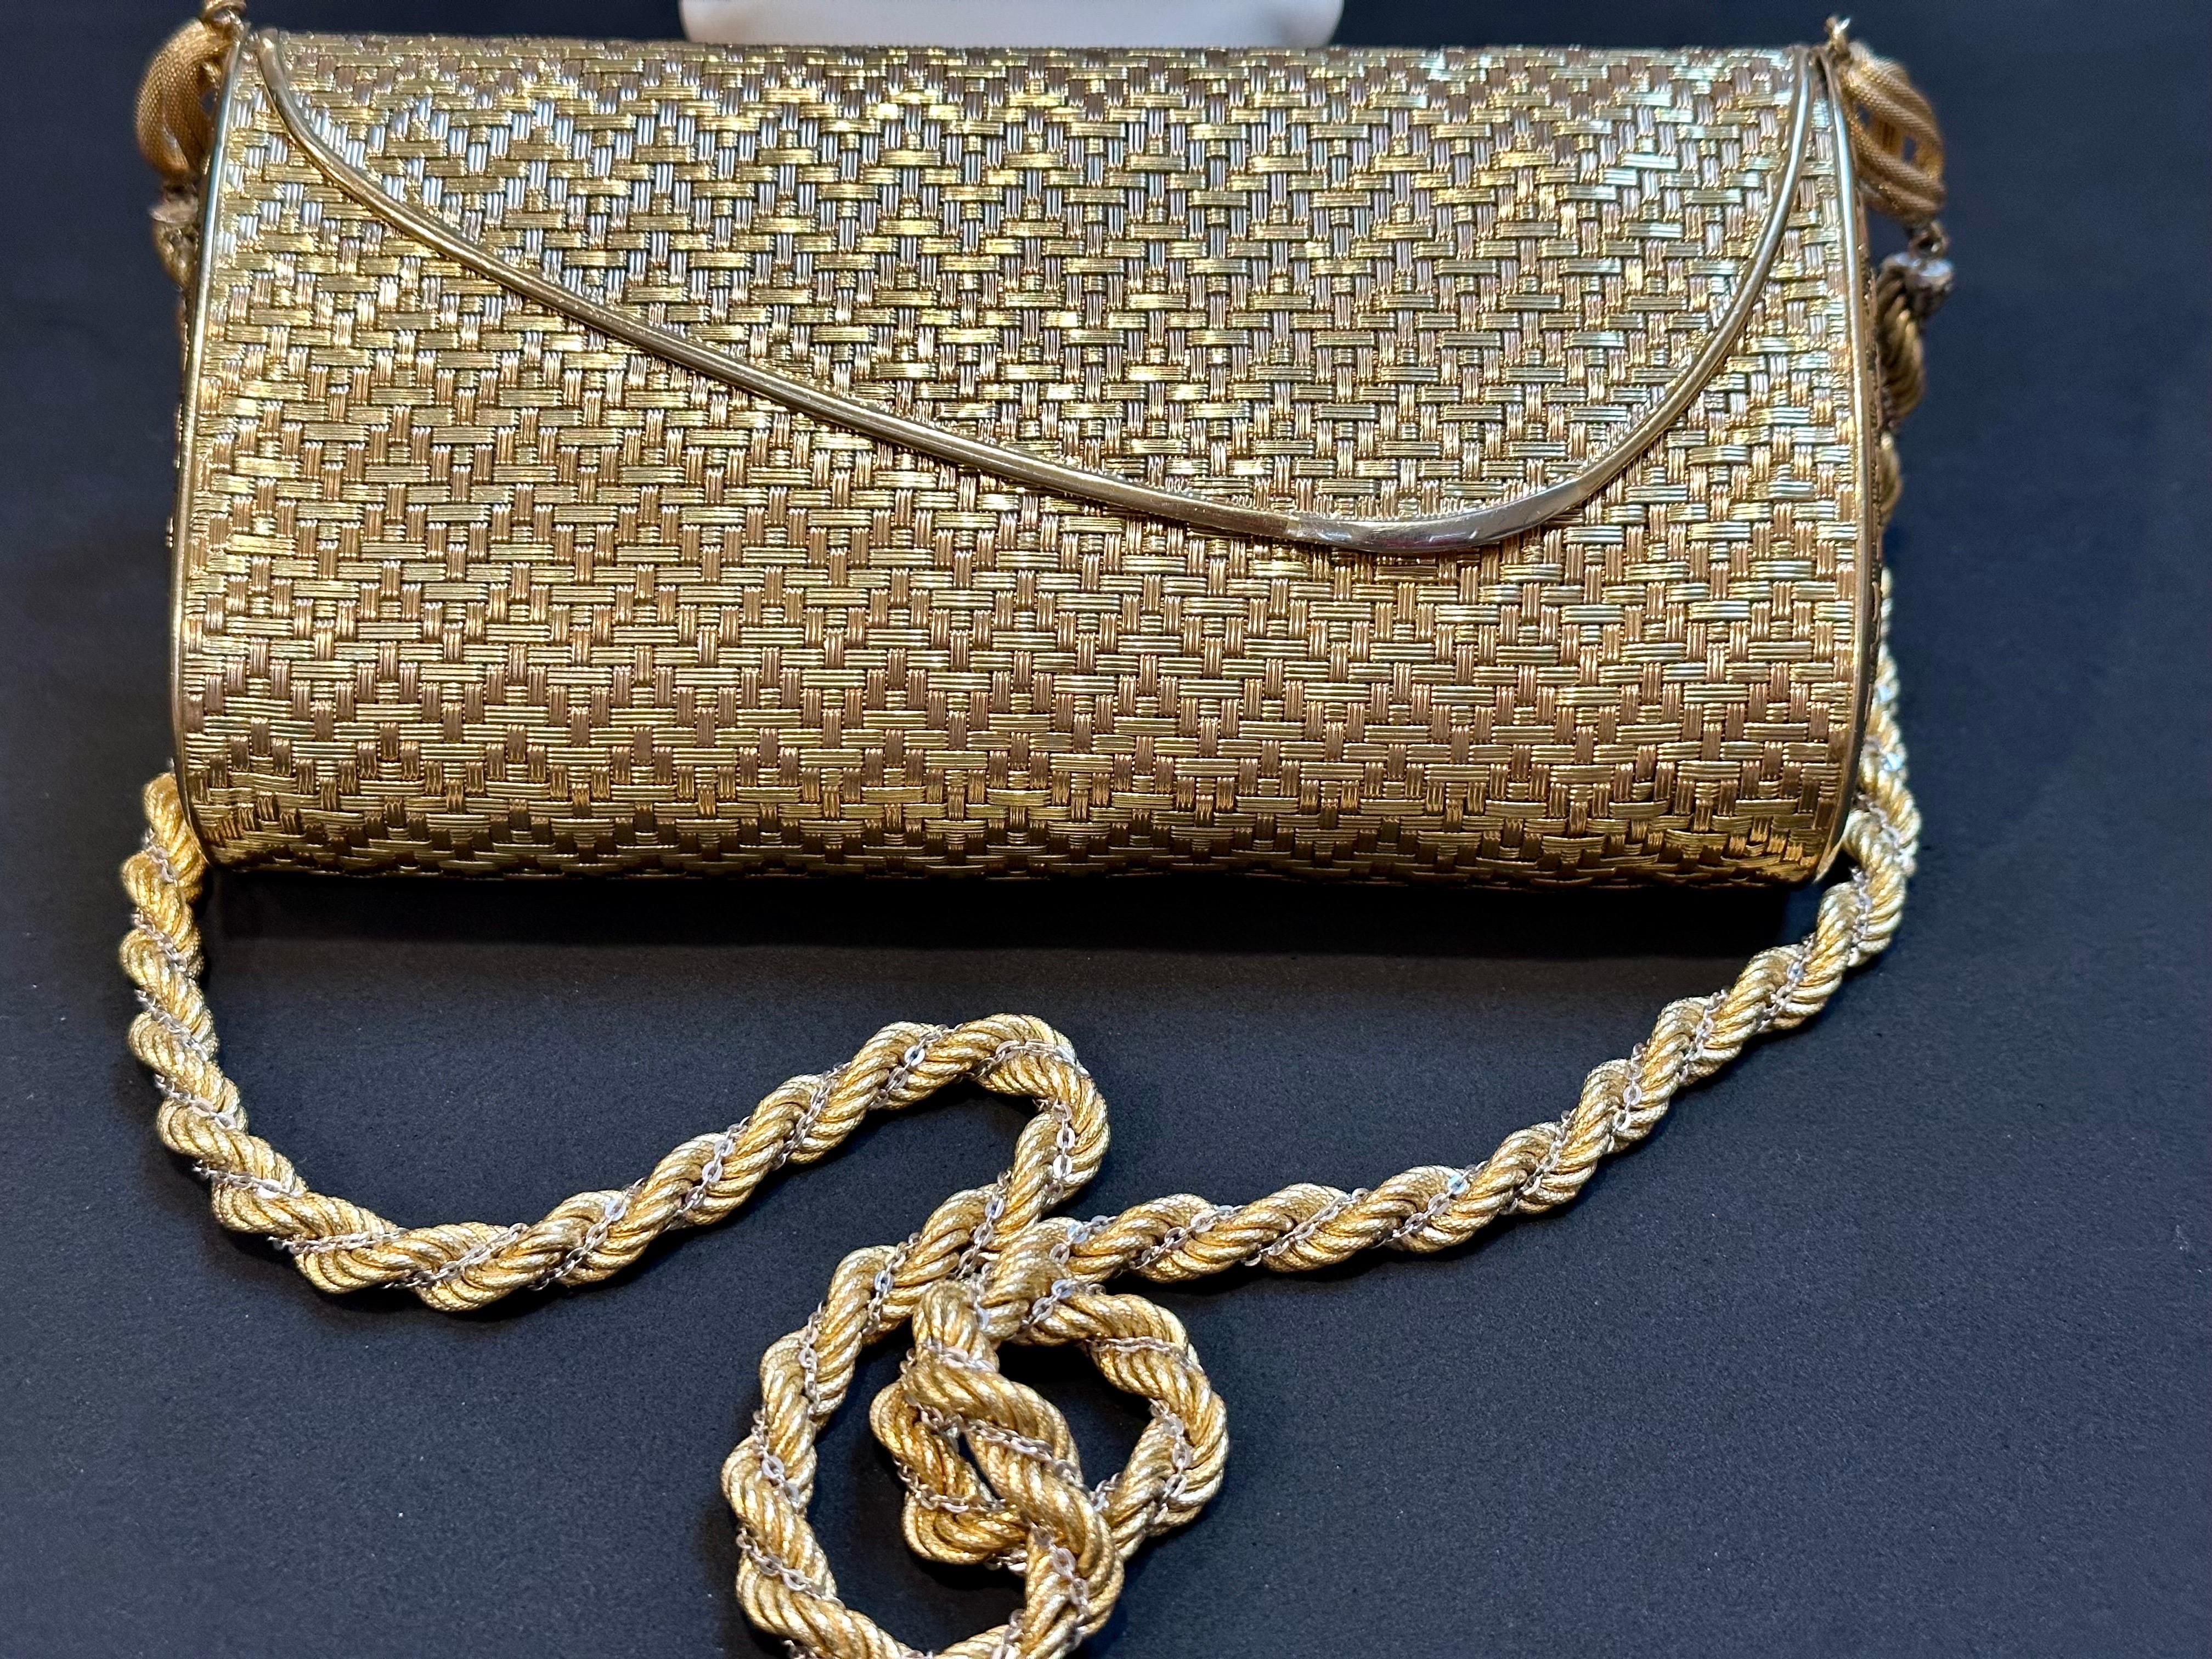 Cartier - Sac à main en maille or jaune 18 carats avec chaîne à l'épaule - Rare - 401 Gm 8